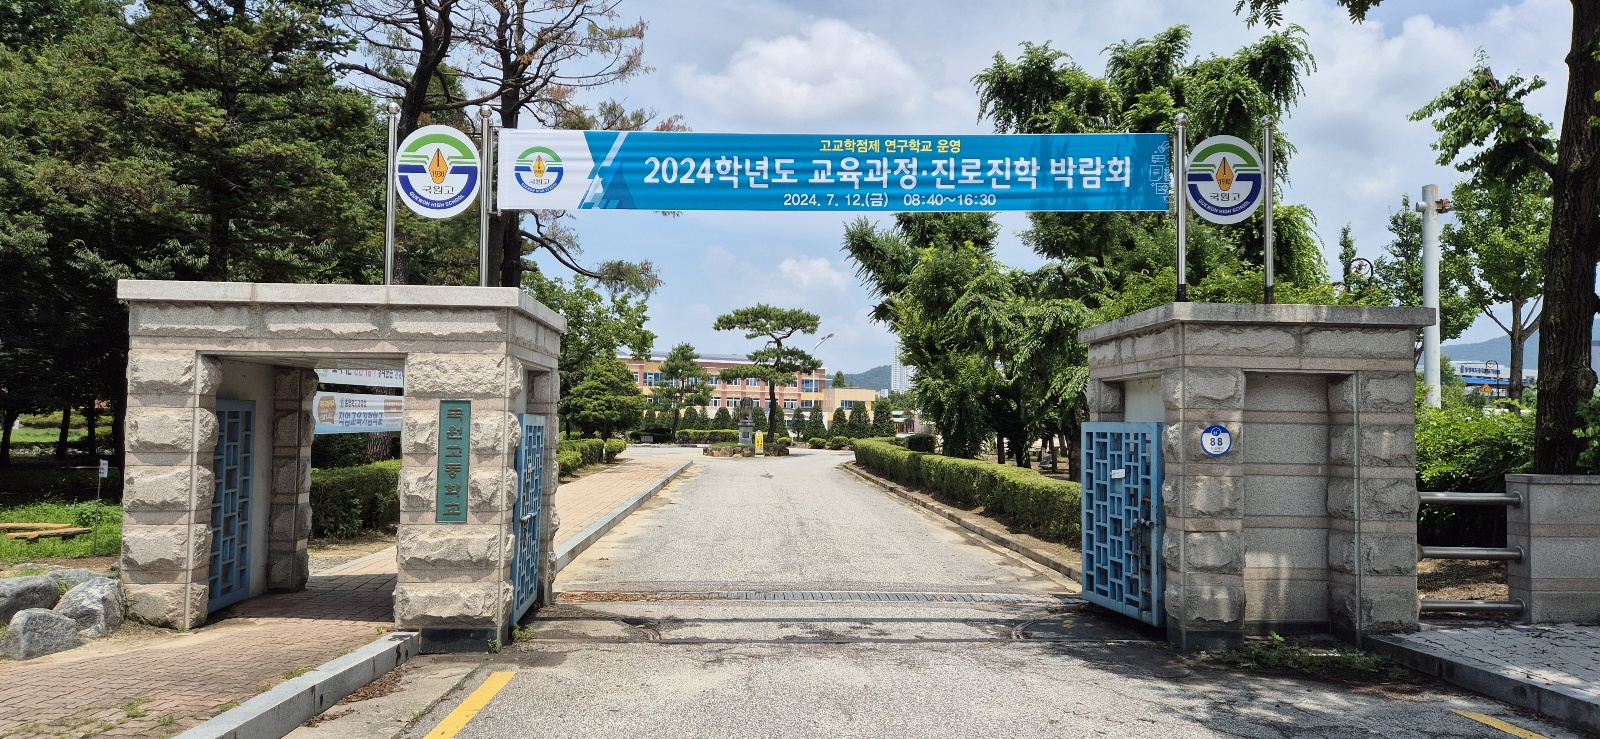 2024. 교육과정&진로진학 박람회 개최(24. 7. 12) (2)